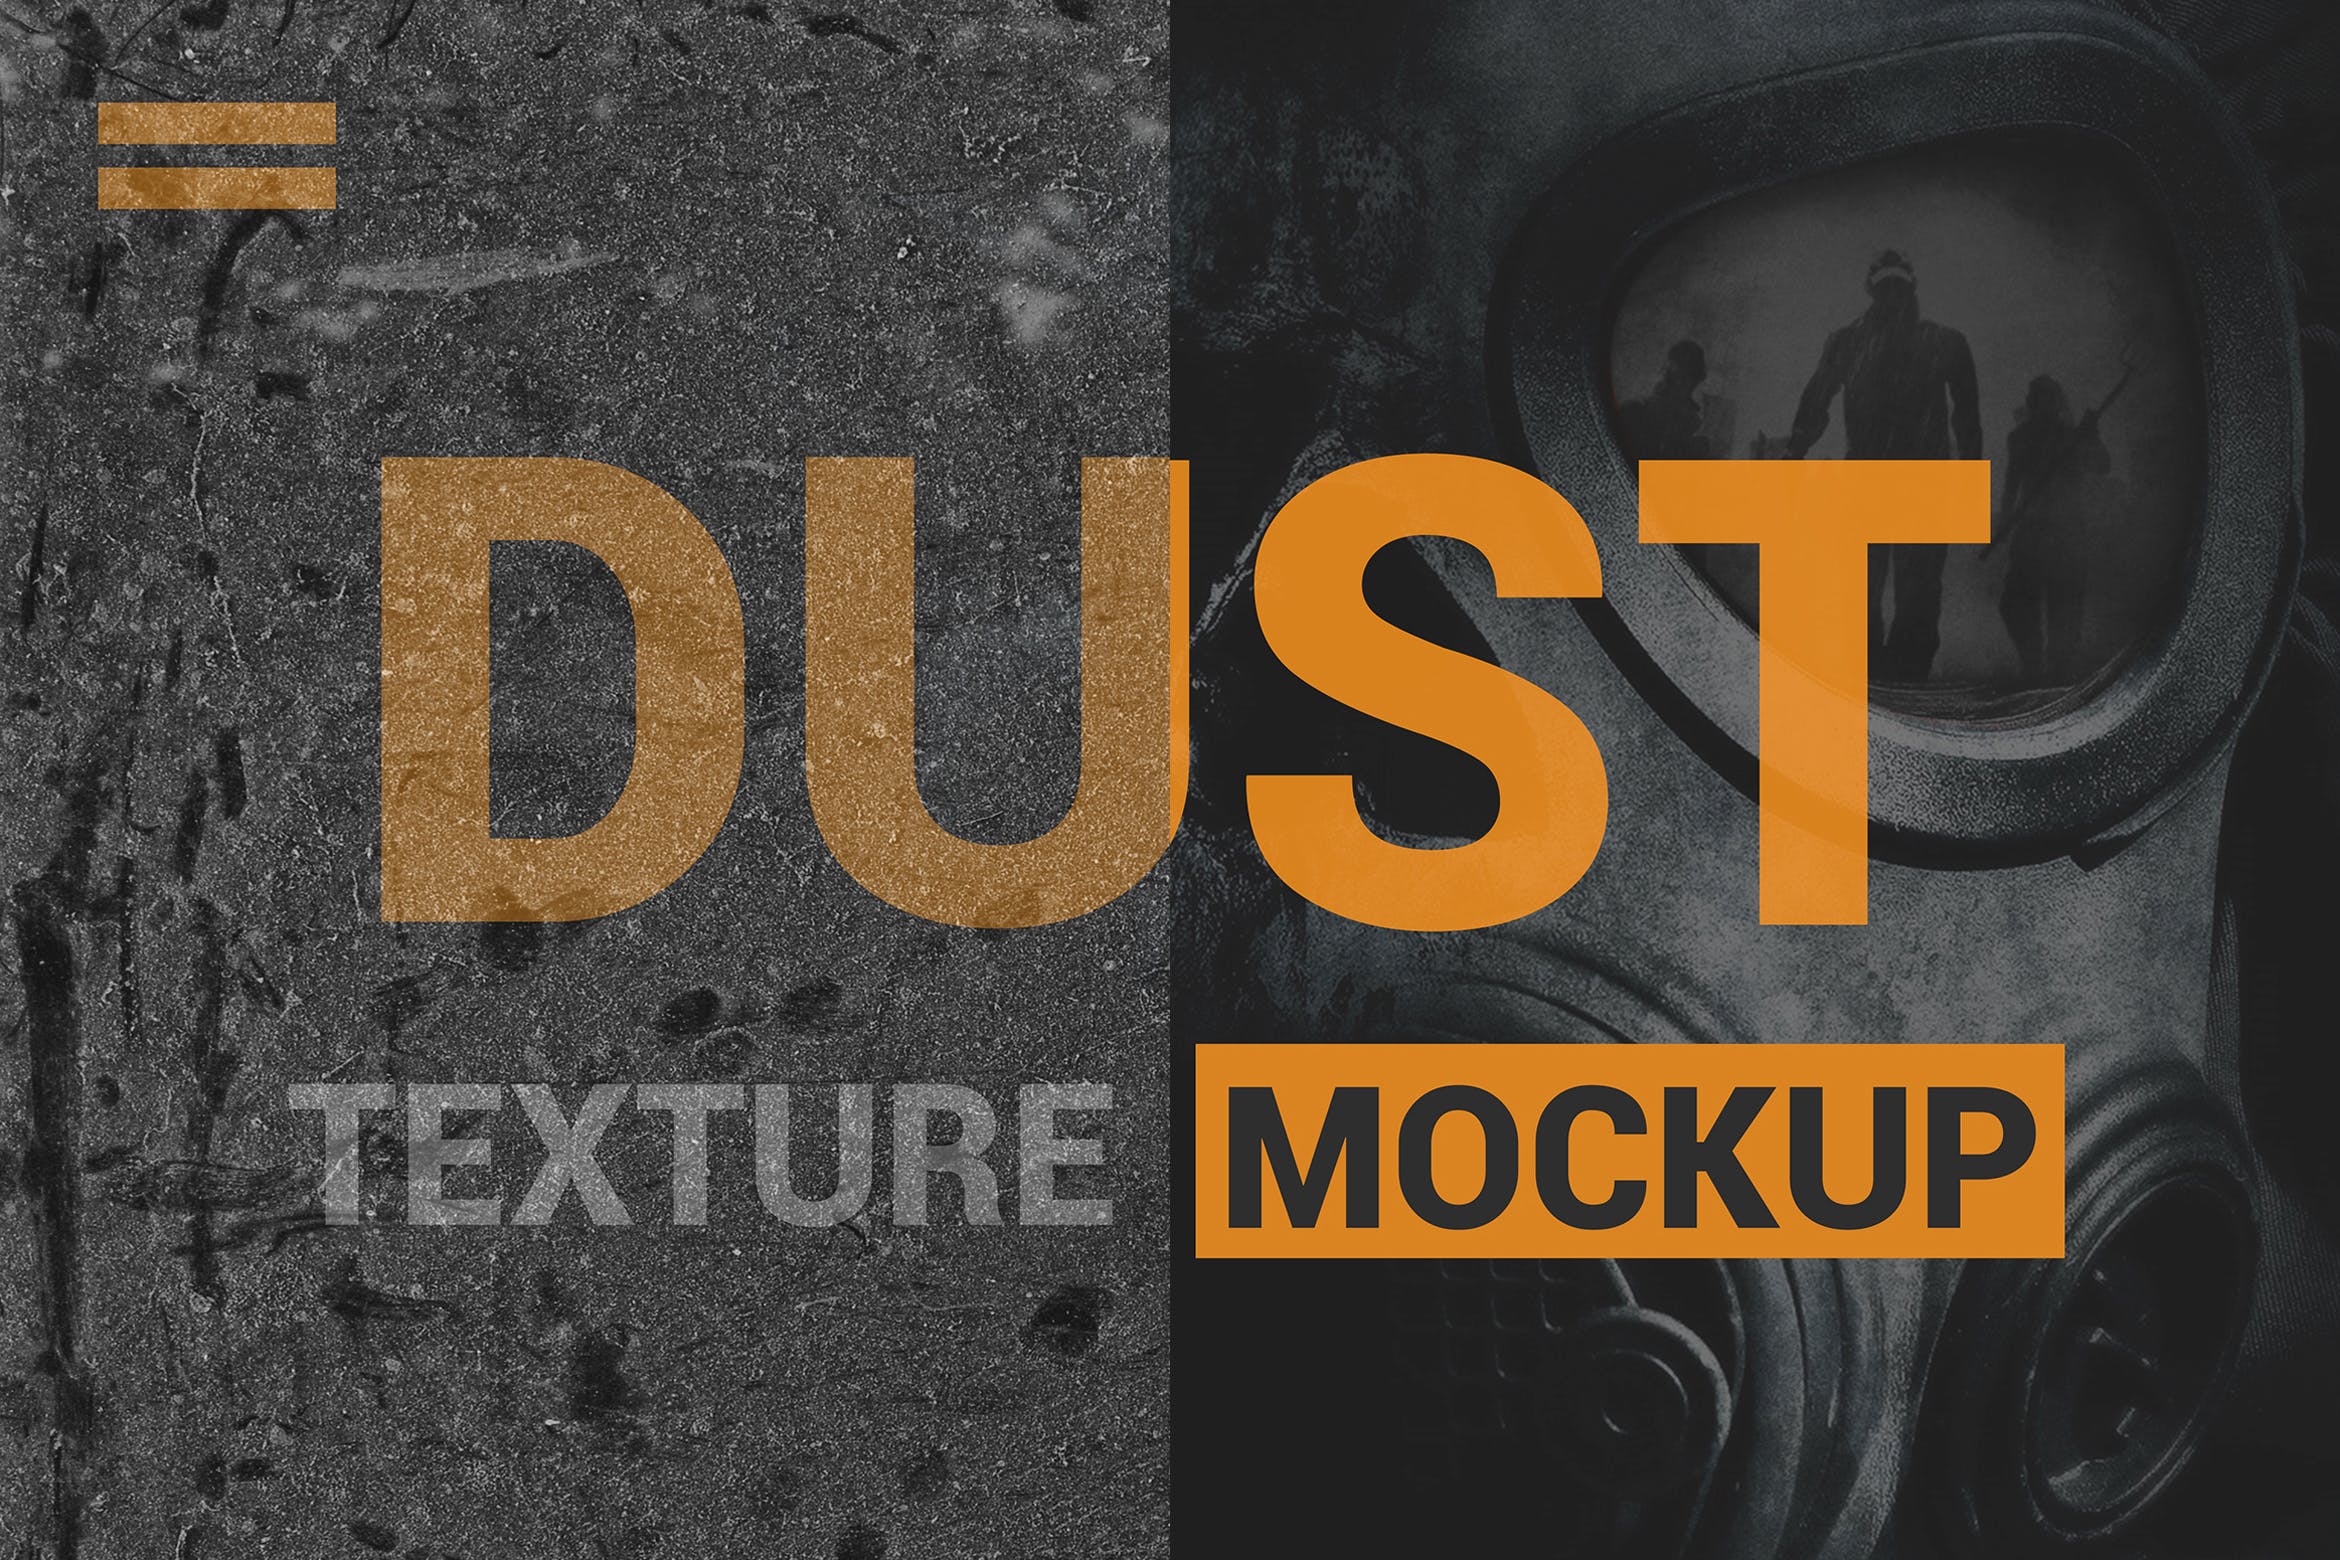 灰尘纹理效果PS图层样式 Dust Texture Mockup插图